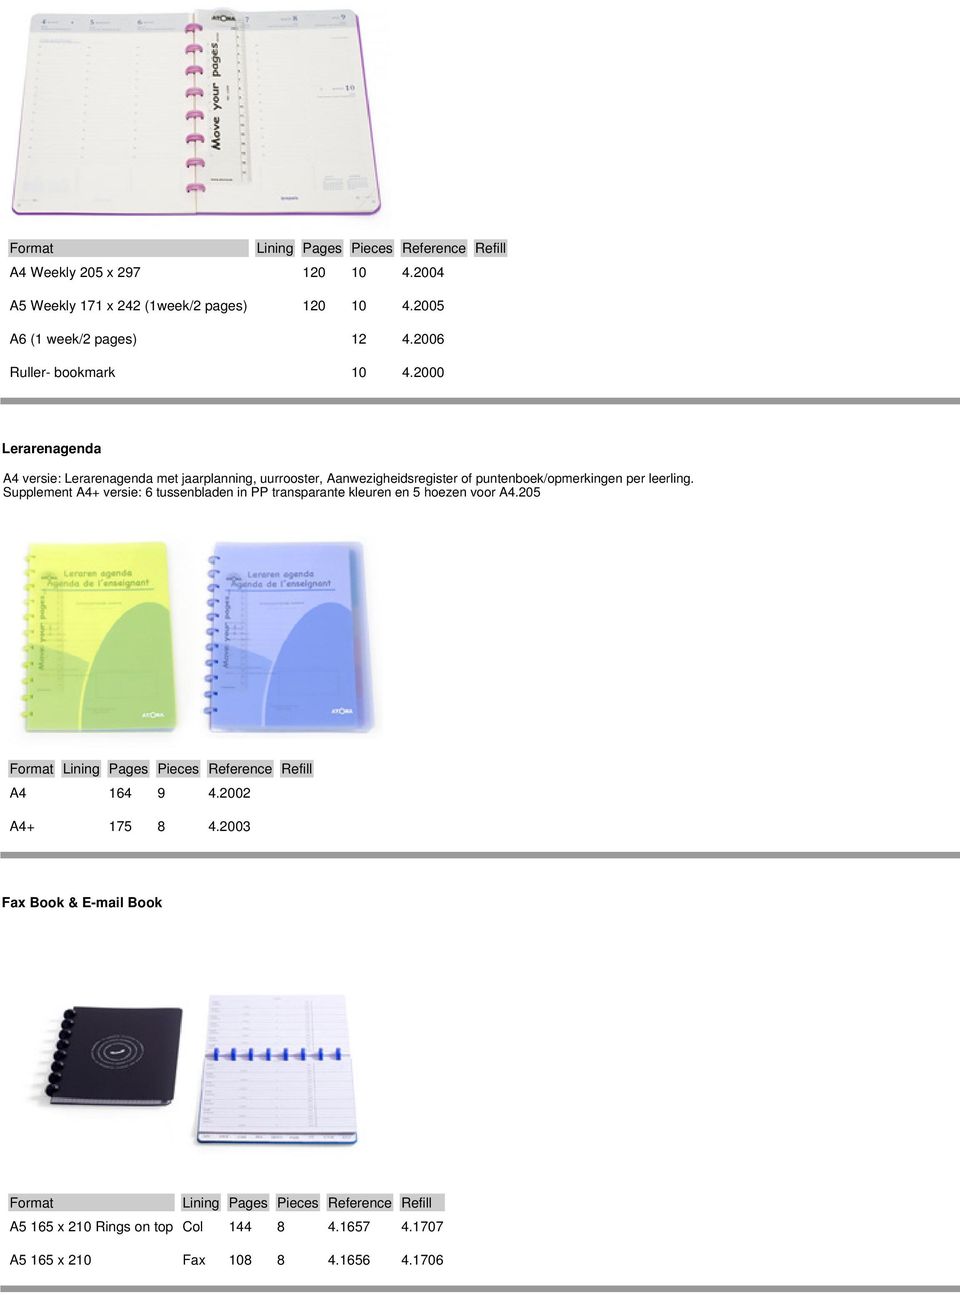 2000 Lerarenagenda A4 versie: Lerarenagenda met jaarplanning, uurrooster, Aanwezigheidsregister of puntenboek/opmerkingen per